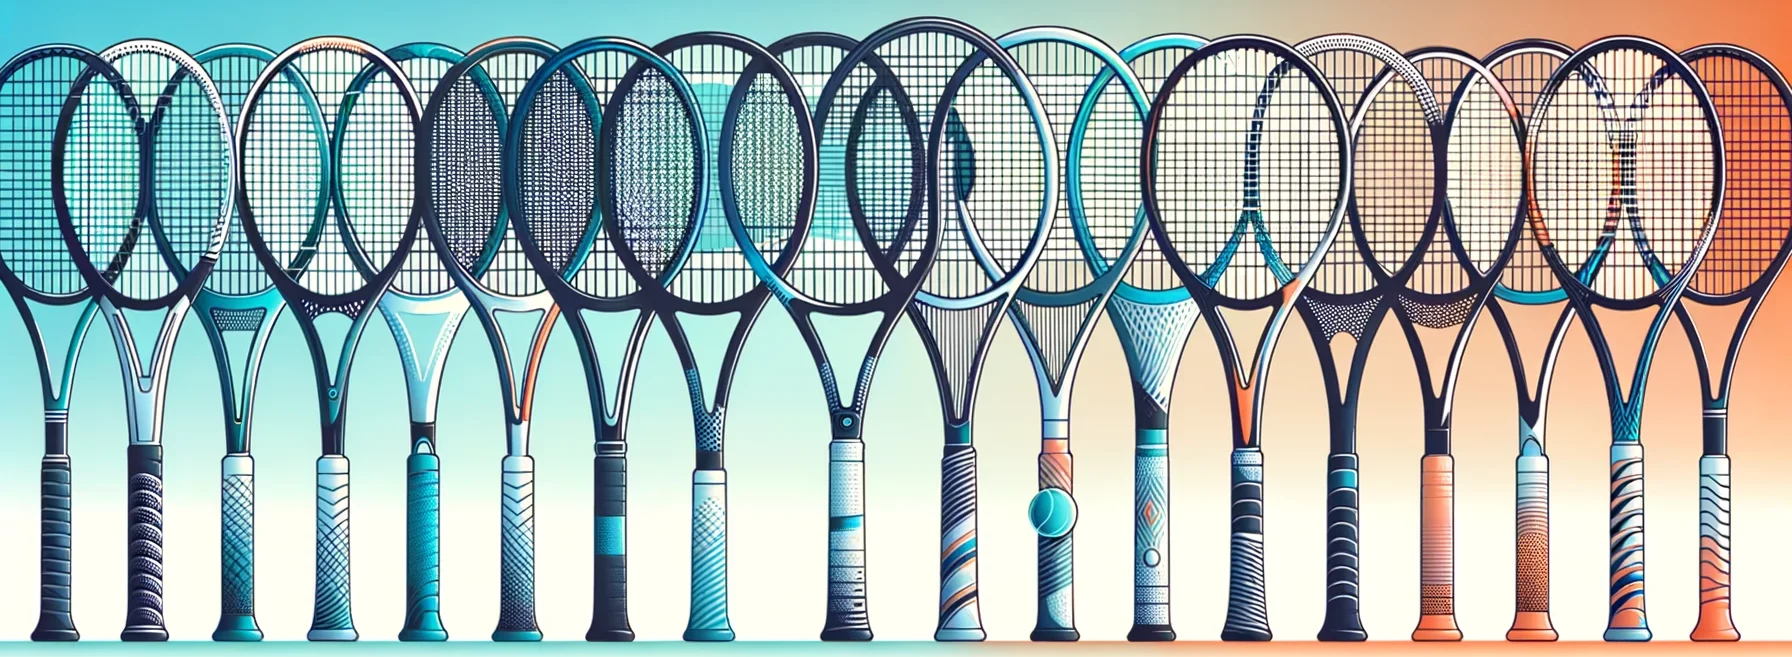 Illustration von verschiedenen horizontal aufgereihten Tennisschlägern